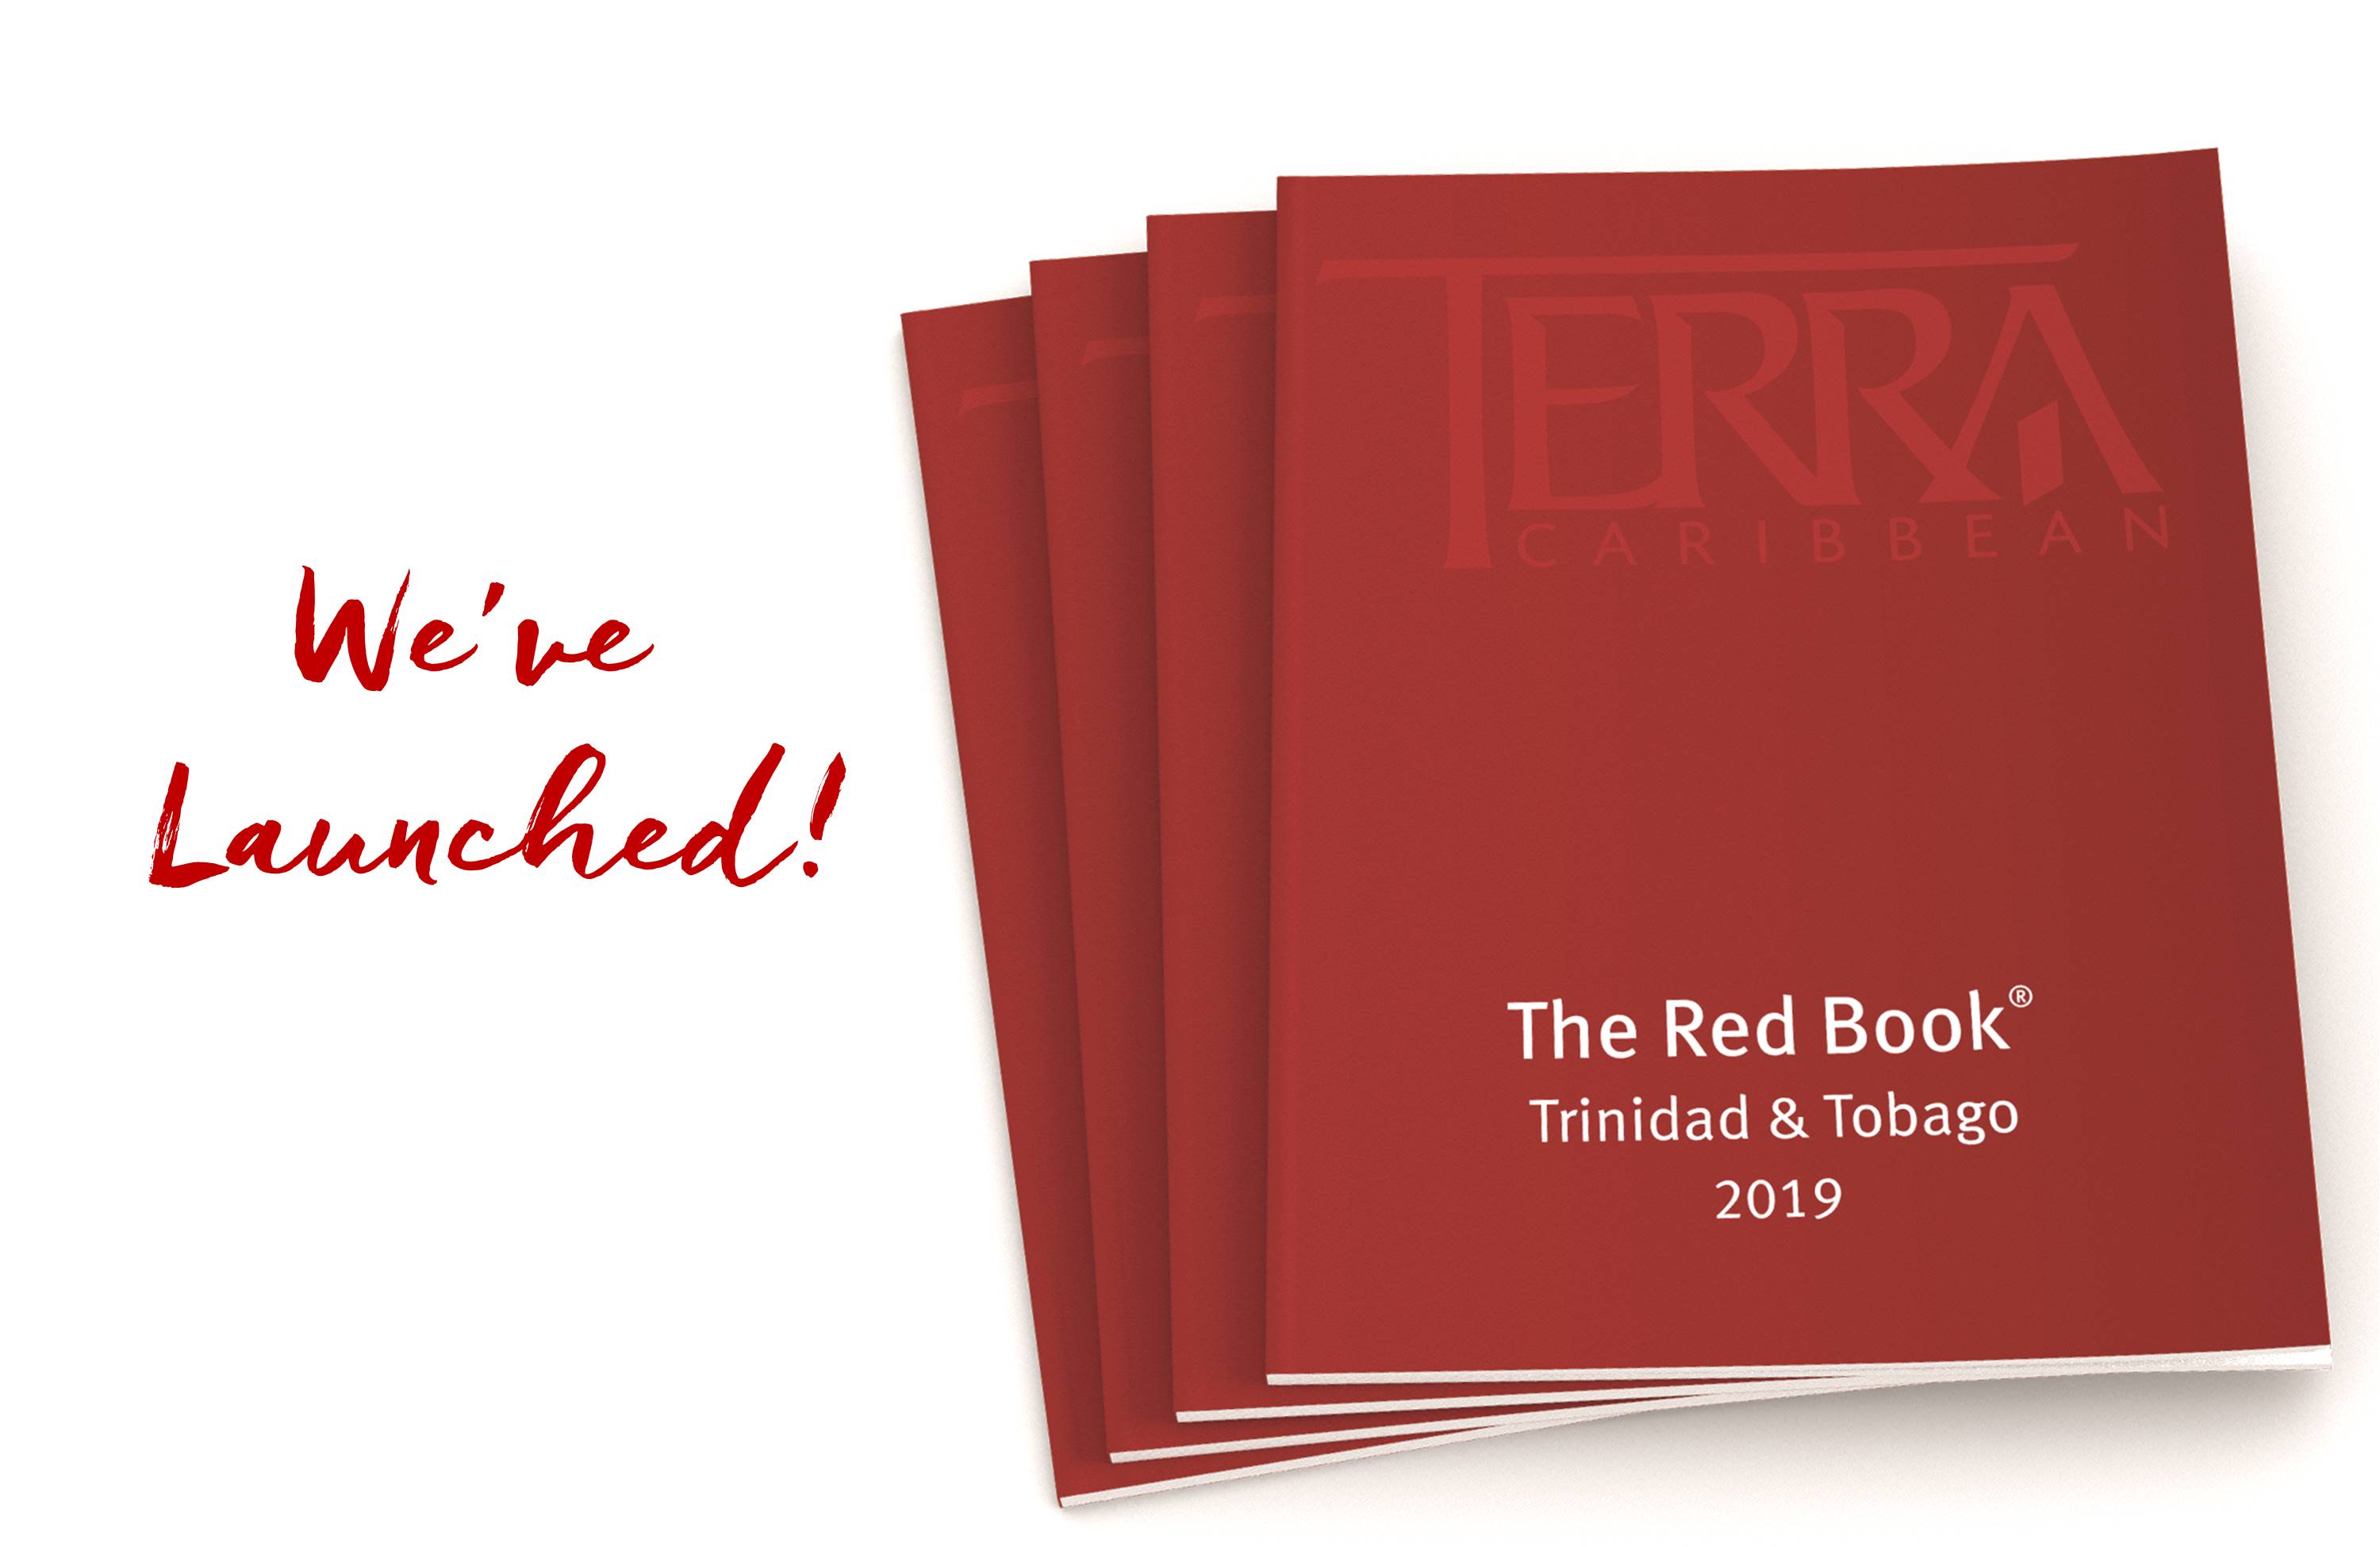 Know More - The Red Book Trinidad & Tobago